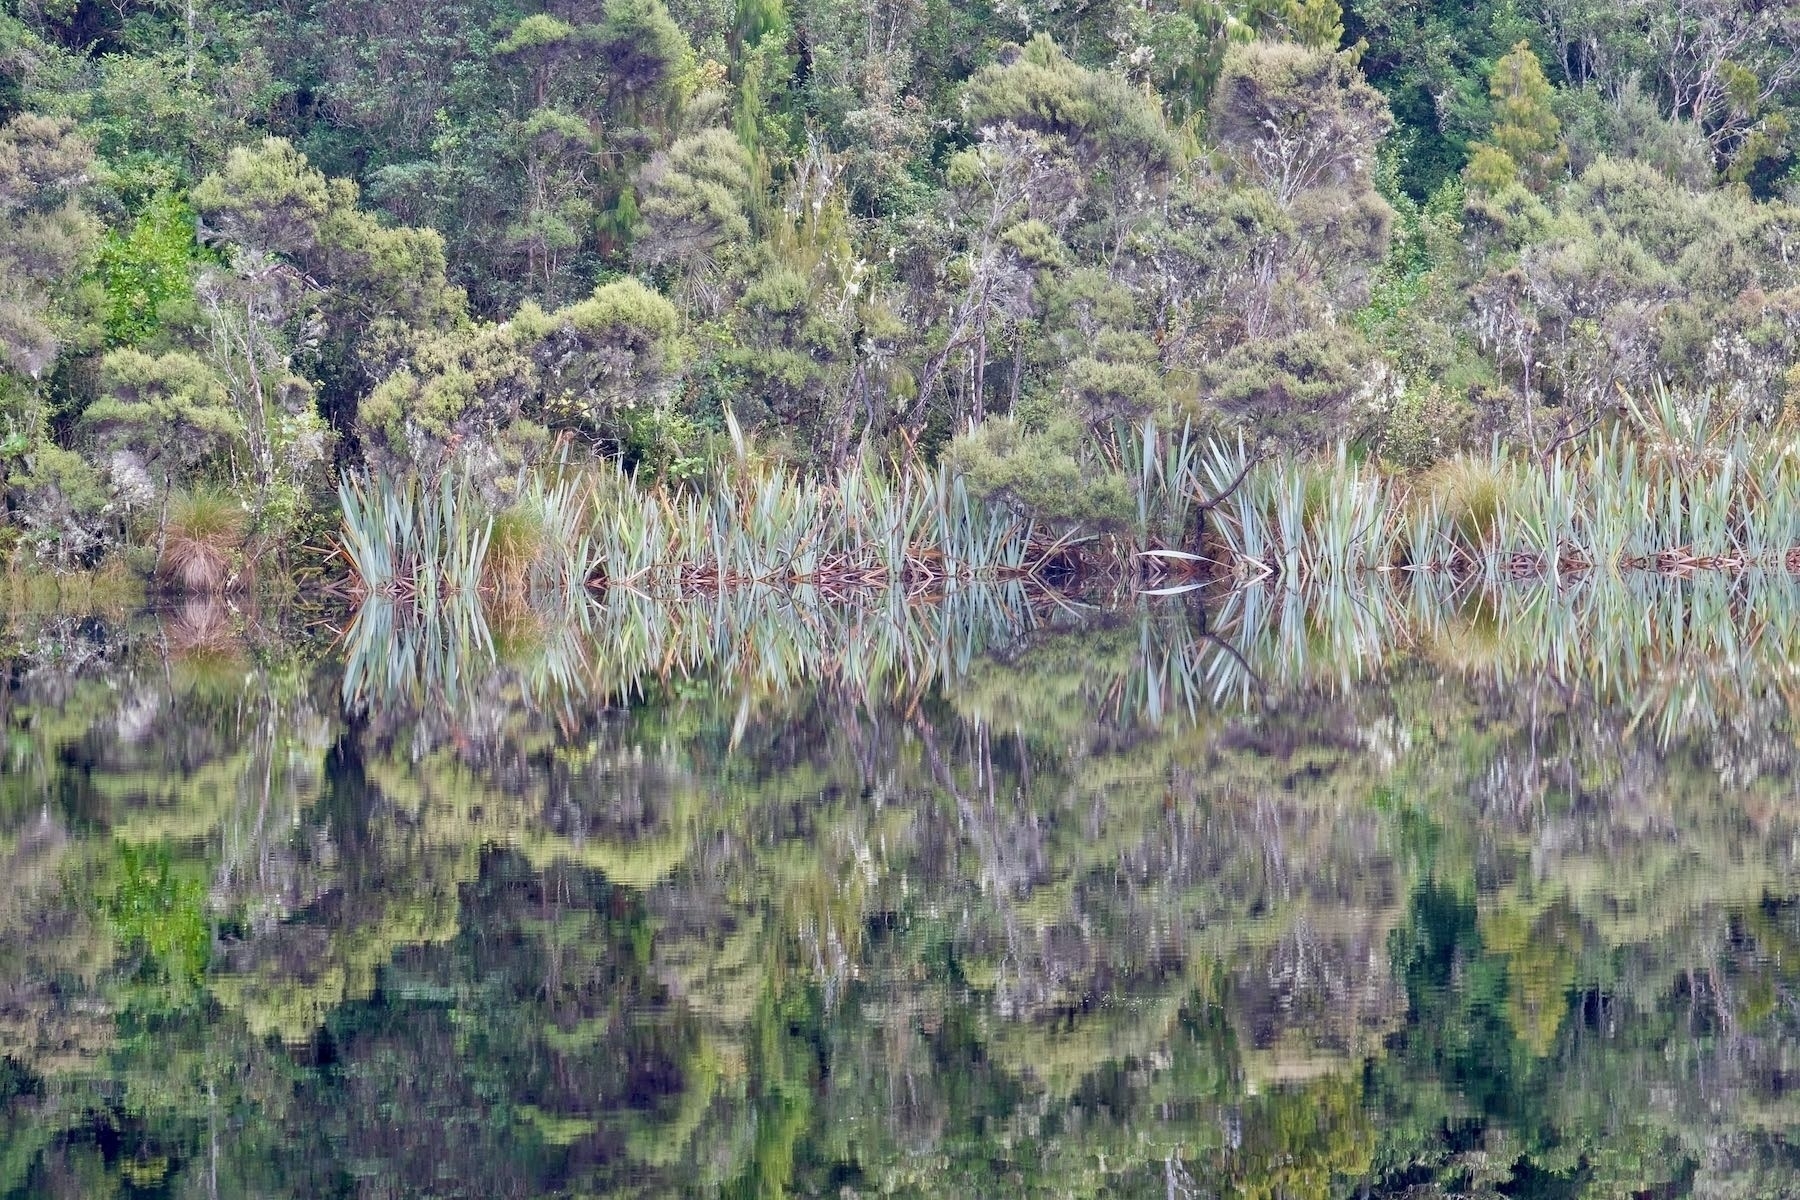 Lake edge vegetation reflected perfectly. 